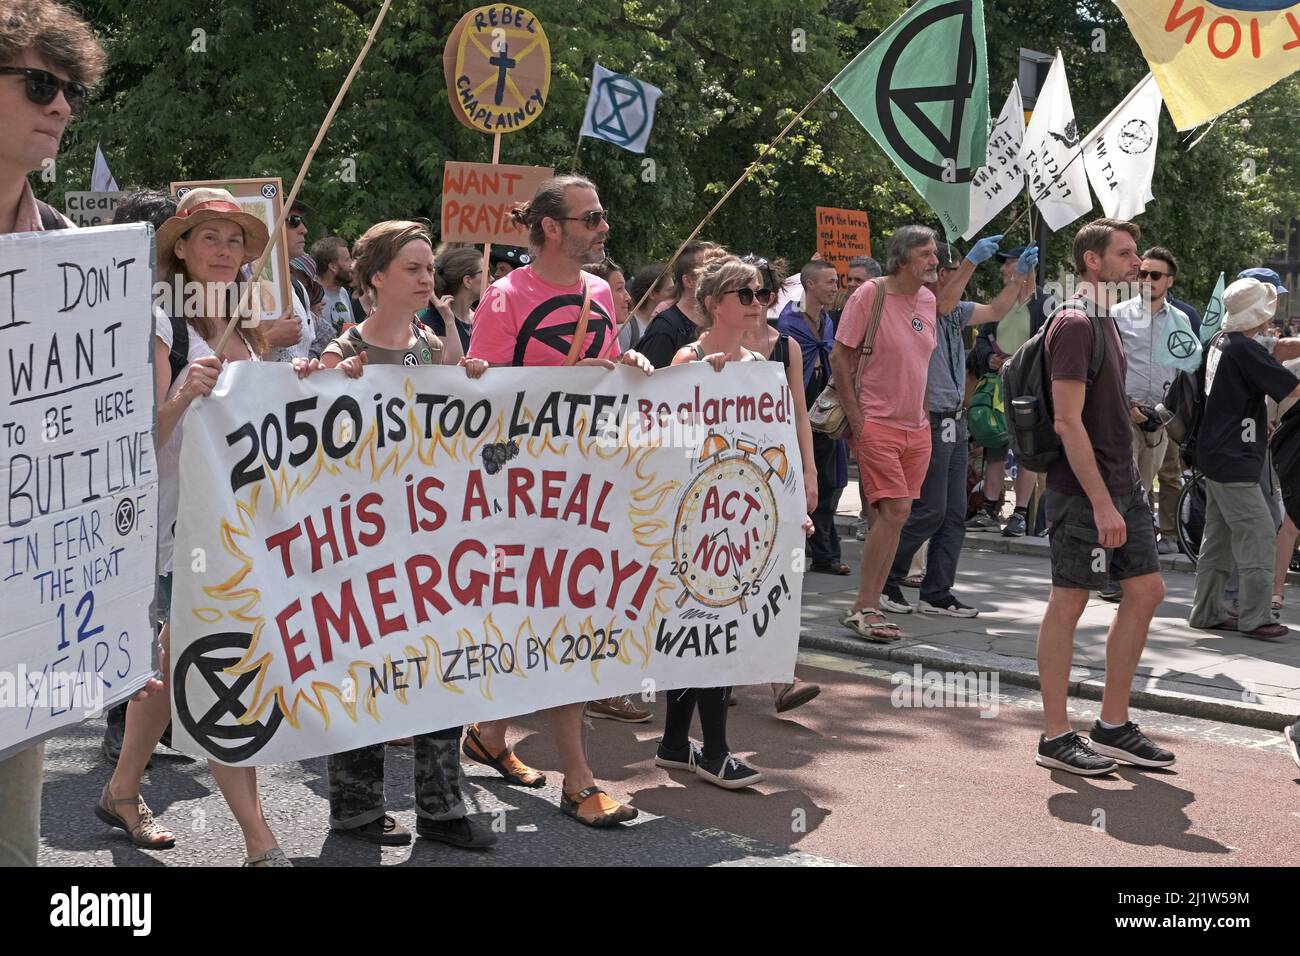 Extinction les manifestants du changement climatique de la rébellion défilent dans le centre-ville. Bristol, Angleterre, Royaume-Uni. 16 juillet 2019. Banque D'Images